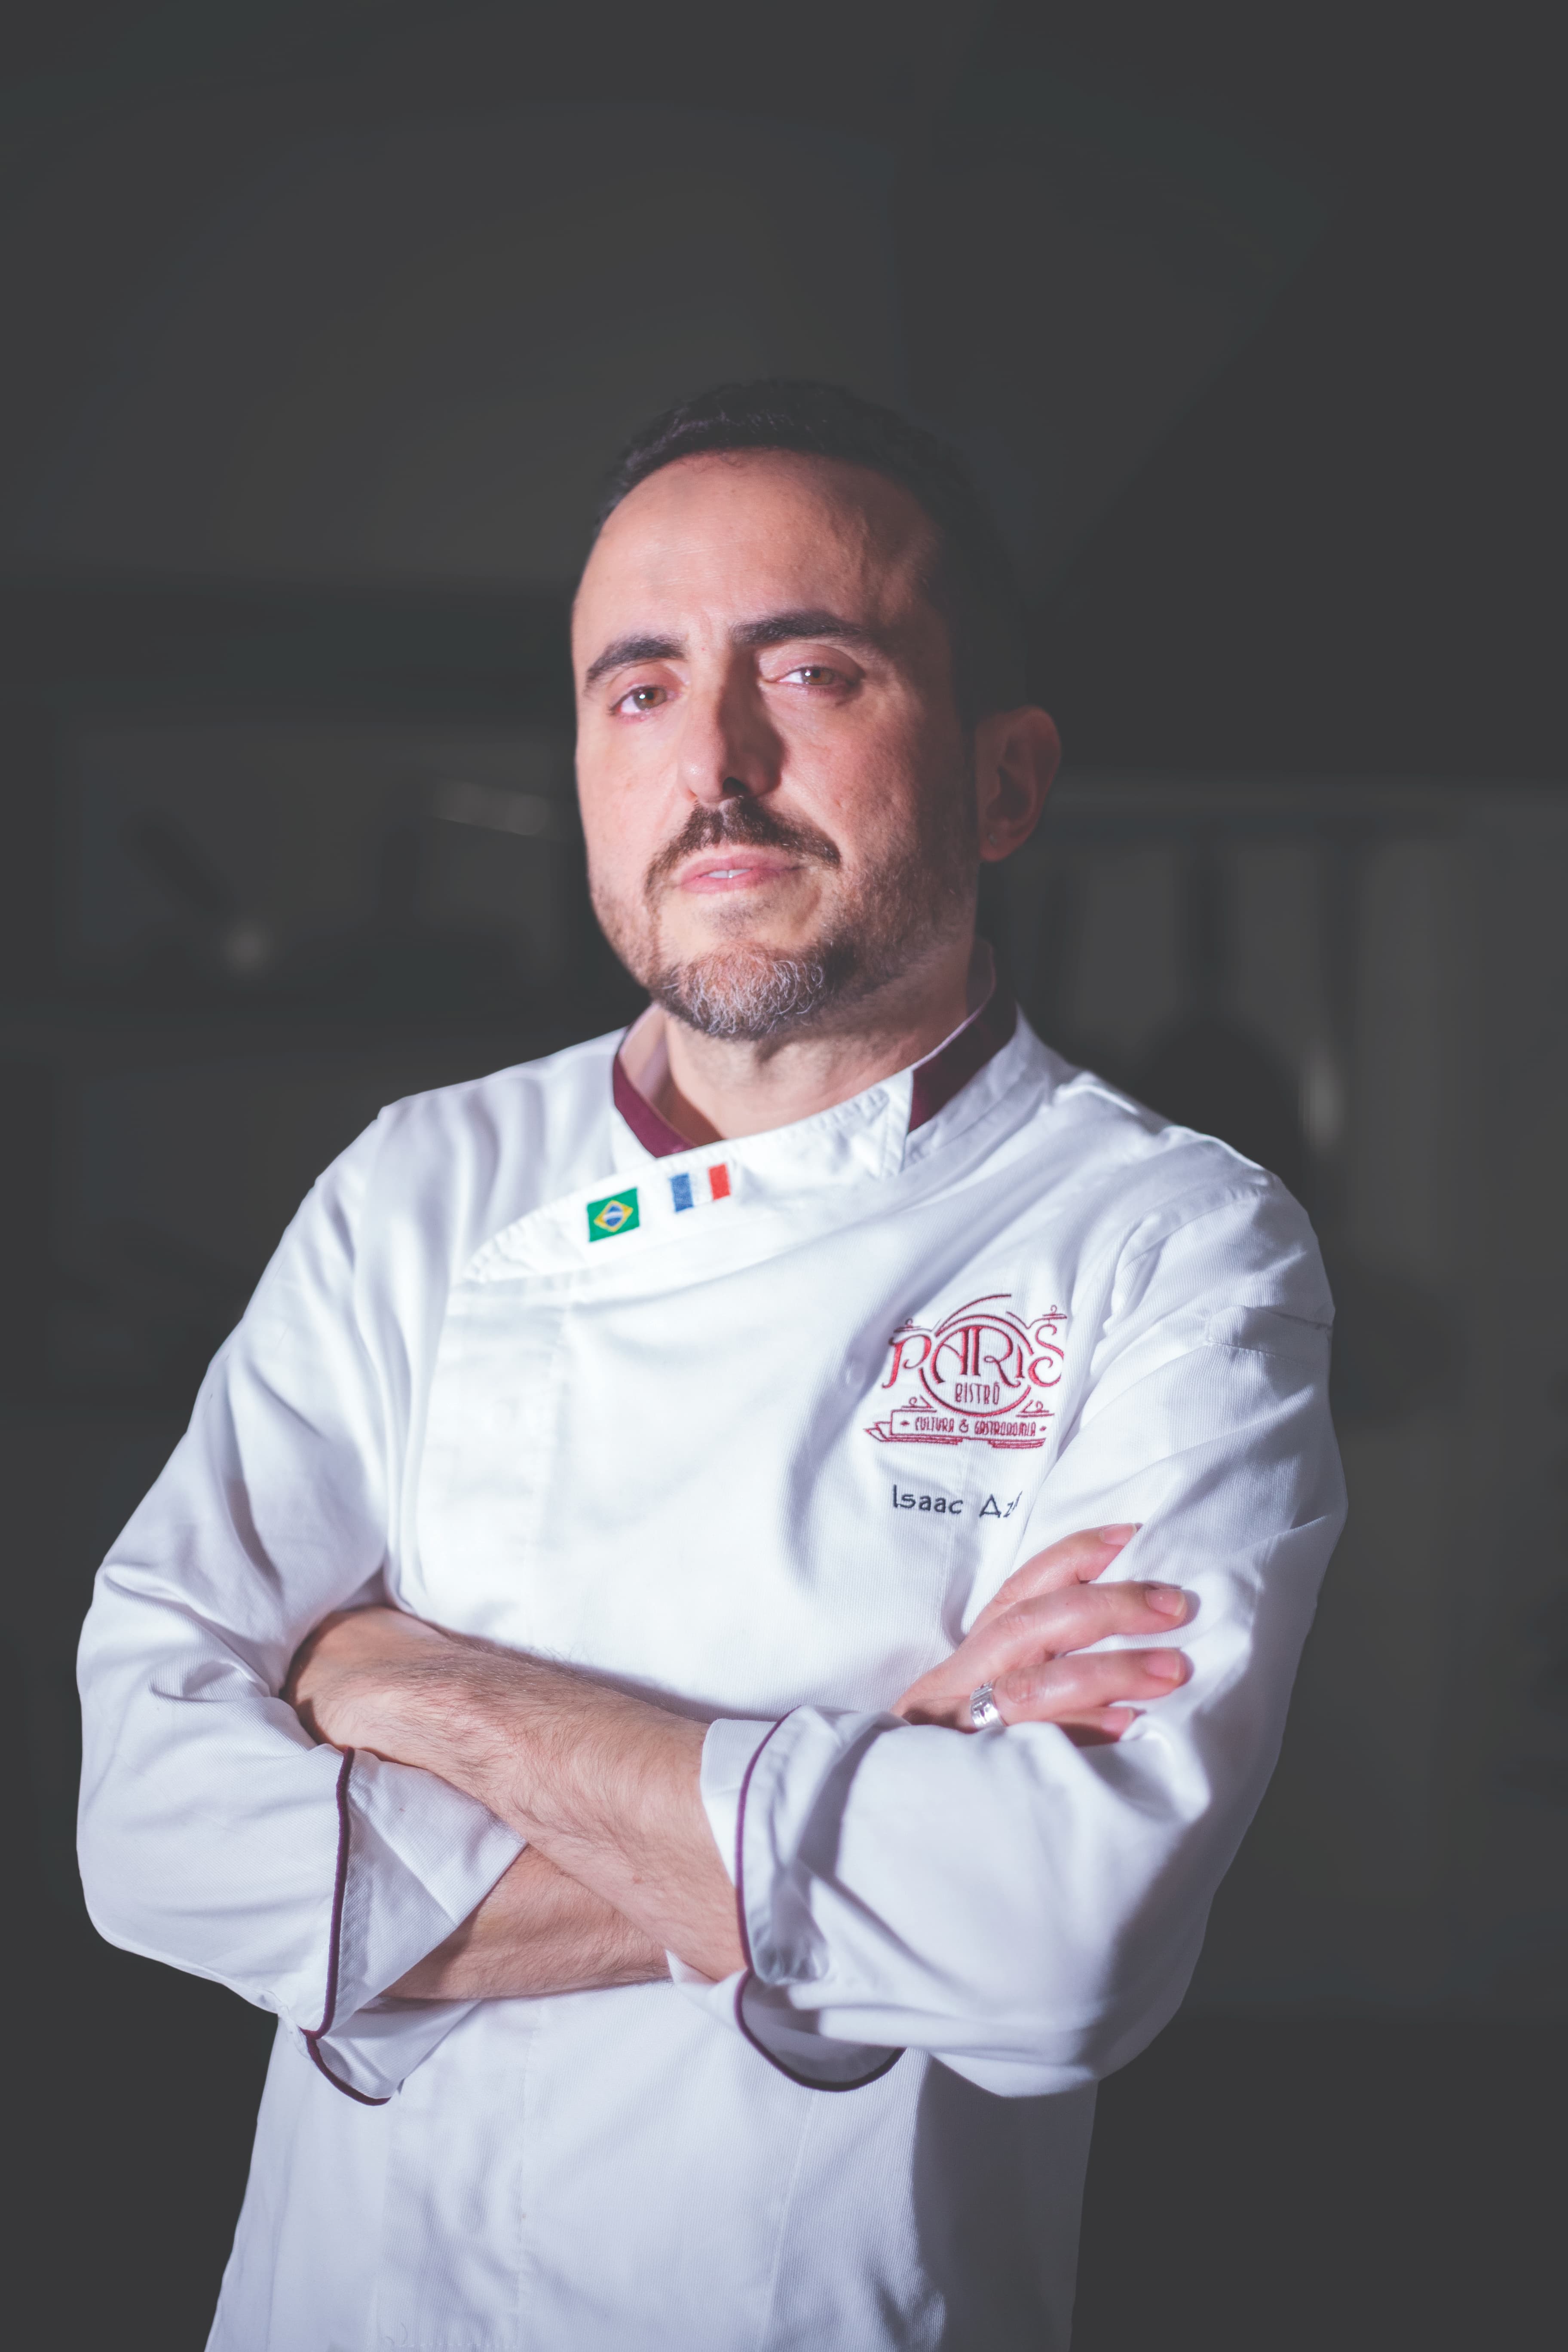 👨🏻‍🍳 Conheça um pouco mais sobre o chef @isaacazar! #Repost  @lapastina.oficial ・・・ DESCUBRA O KIT DO CHEF BY ISAAC AZAR 😍 O chef Isaac  @isaacazar, By PARIS 6